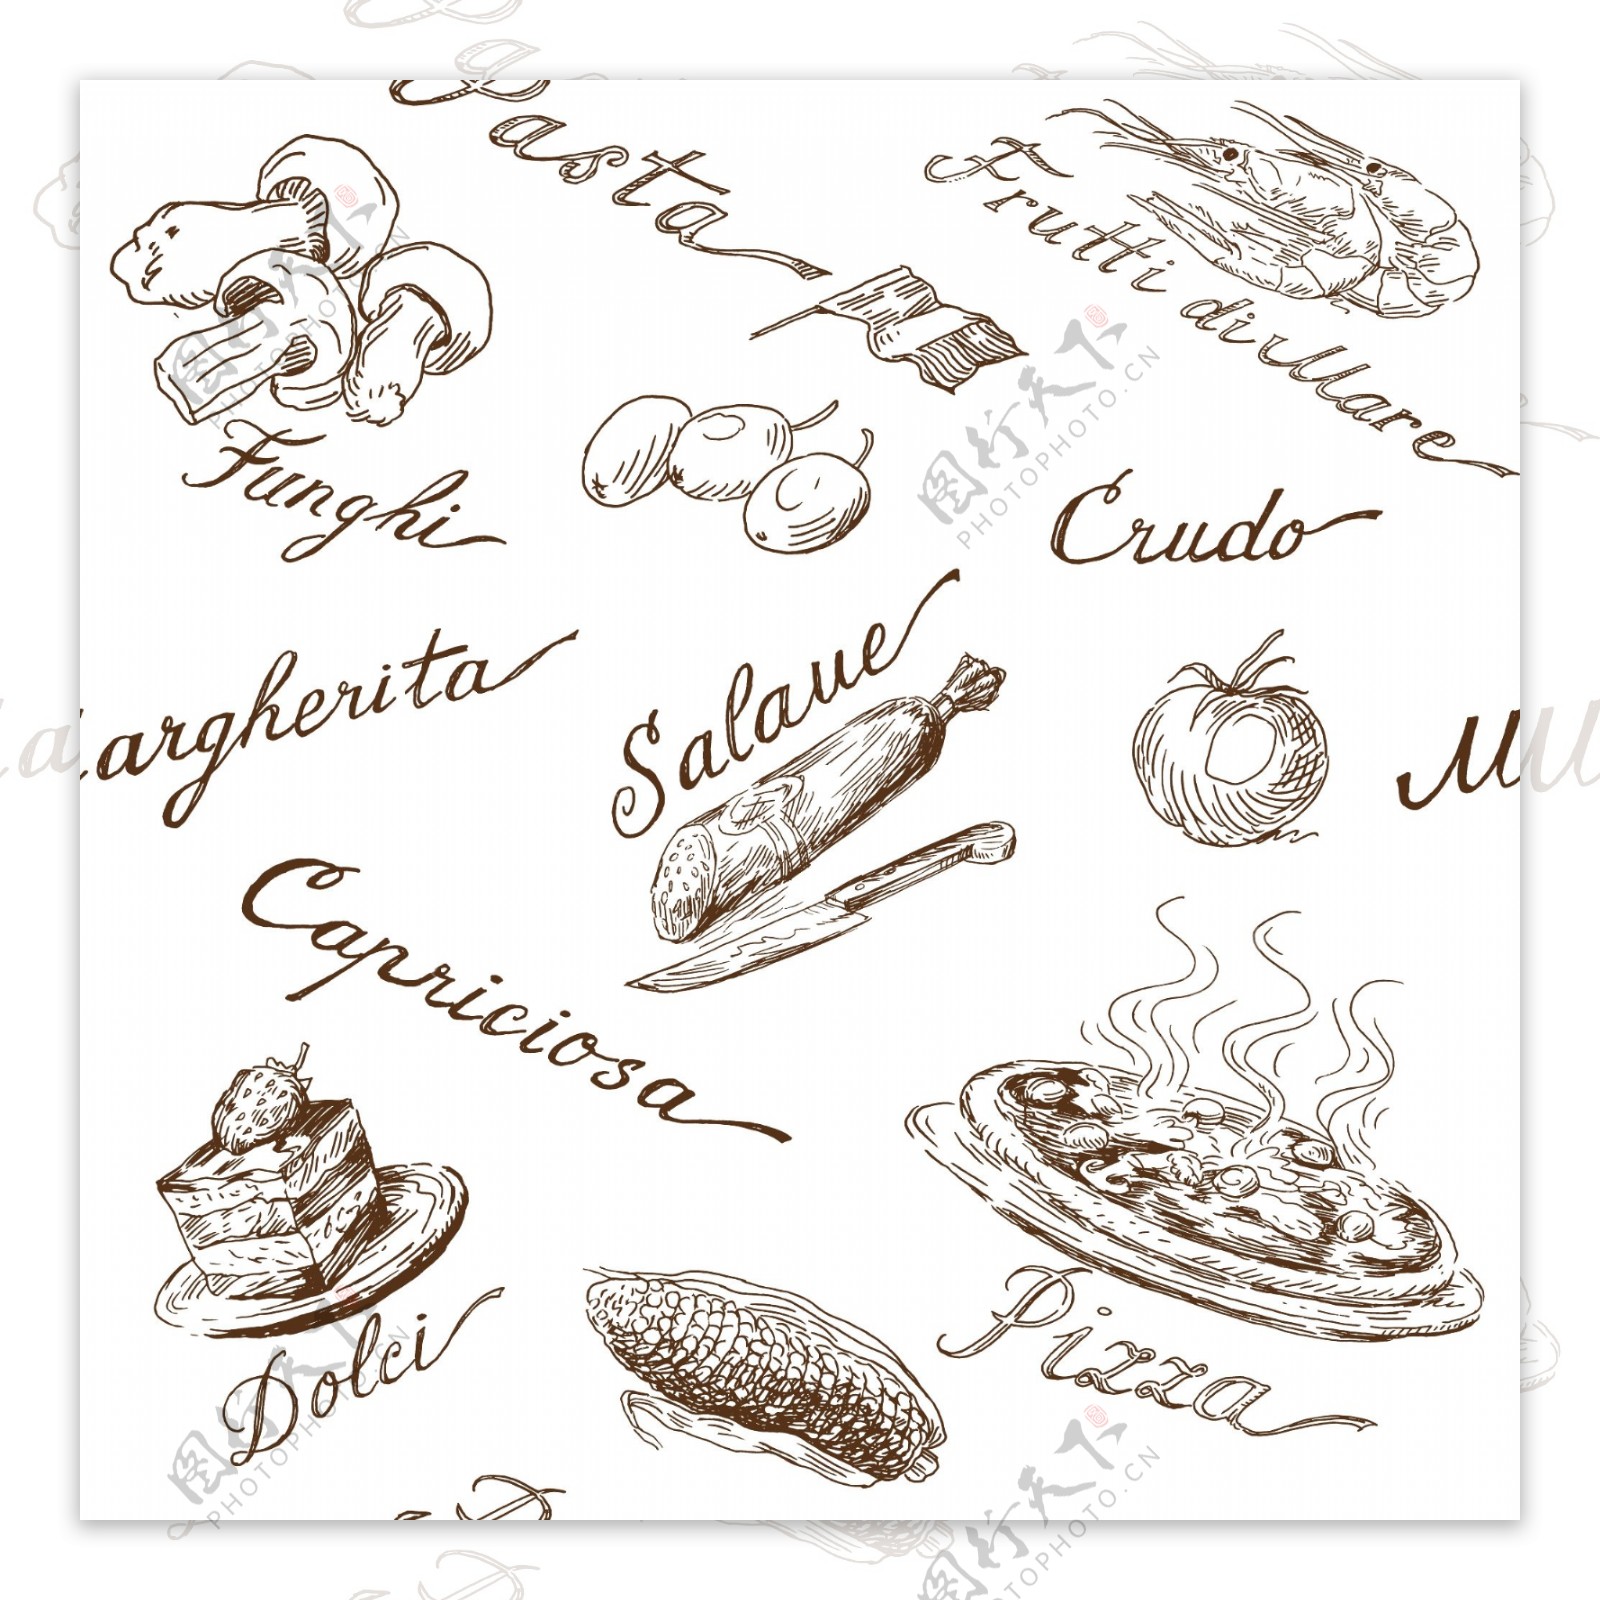 意大利菜图标图片